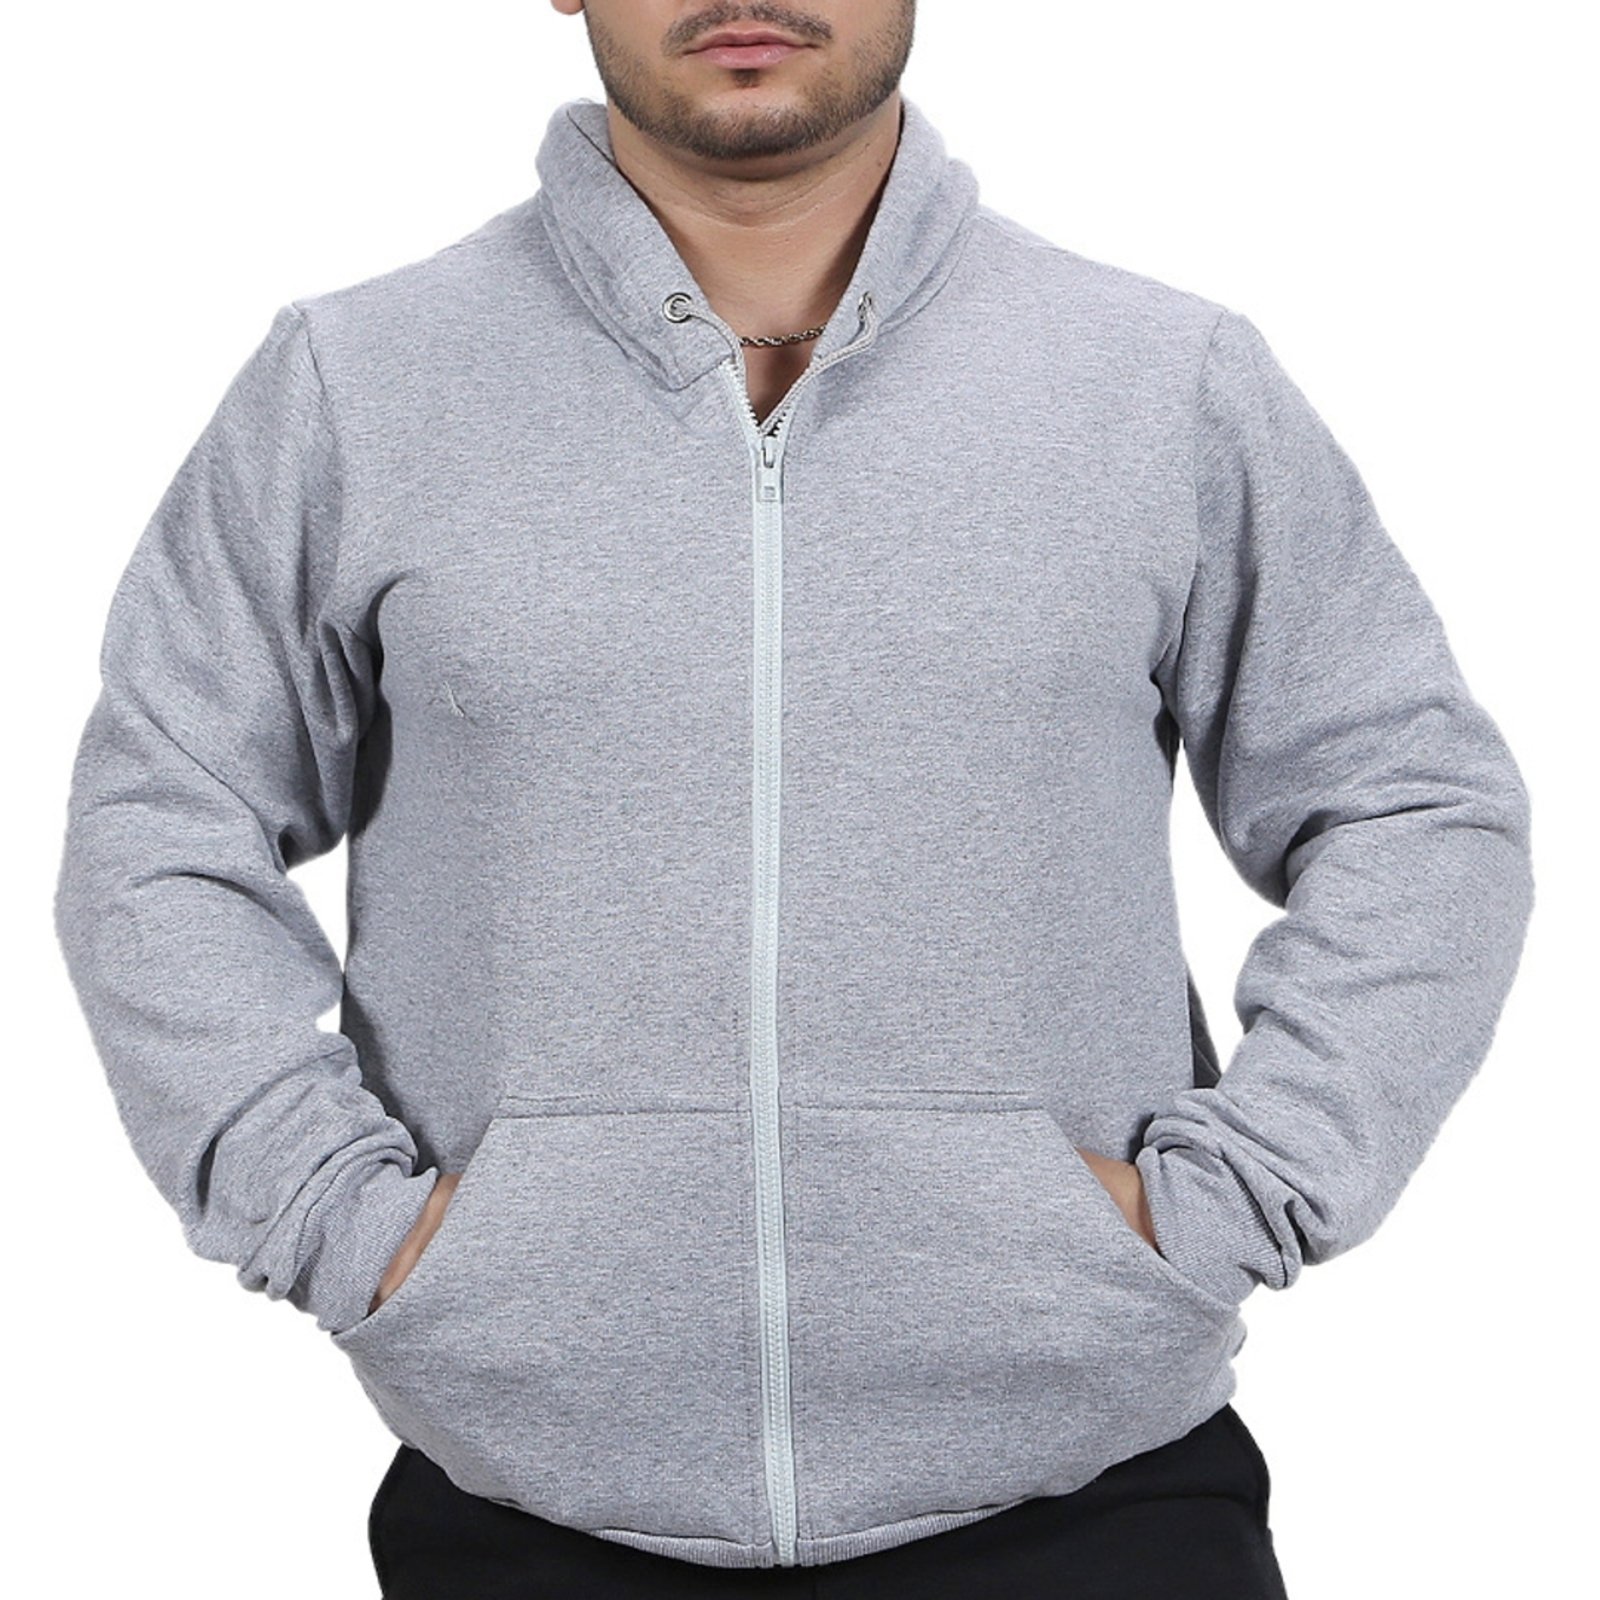 blusa de frio masculina moleton com ziper